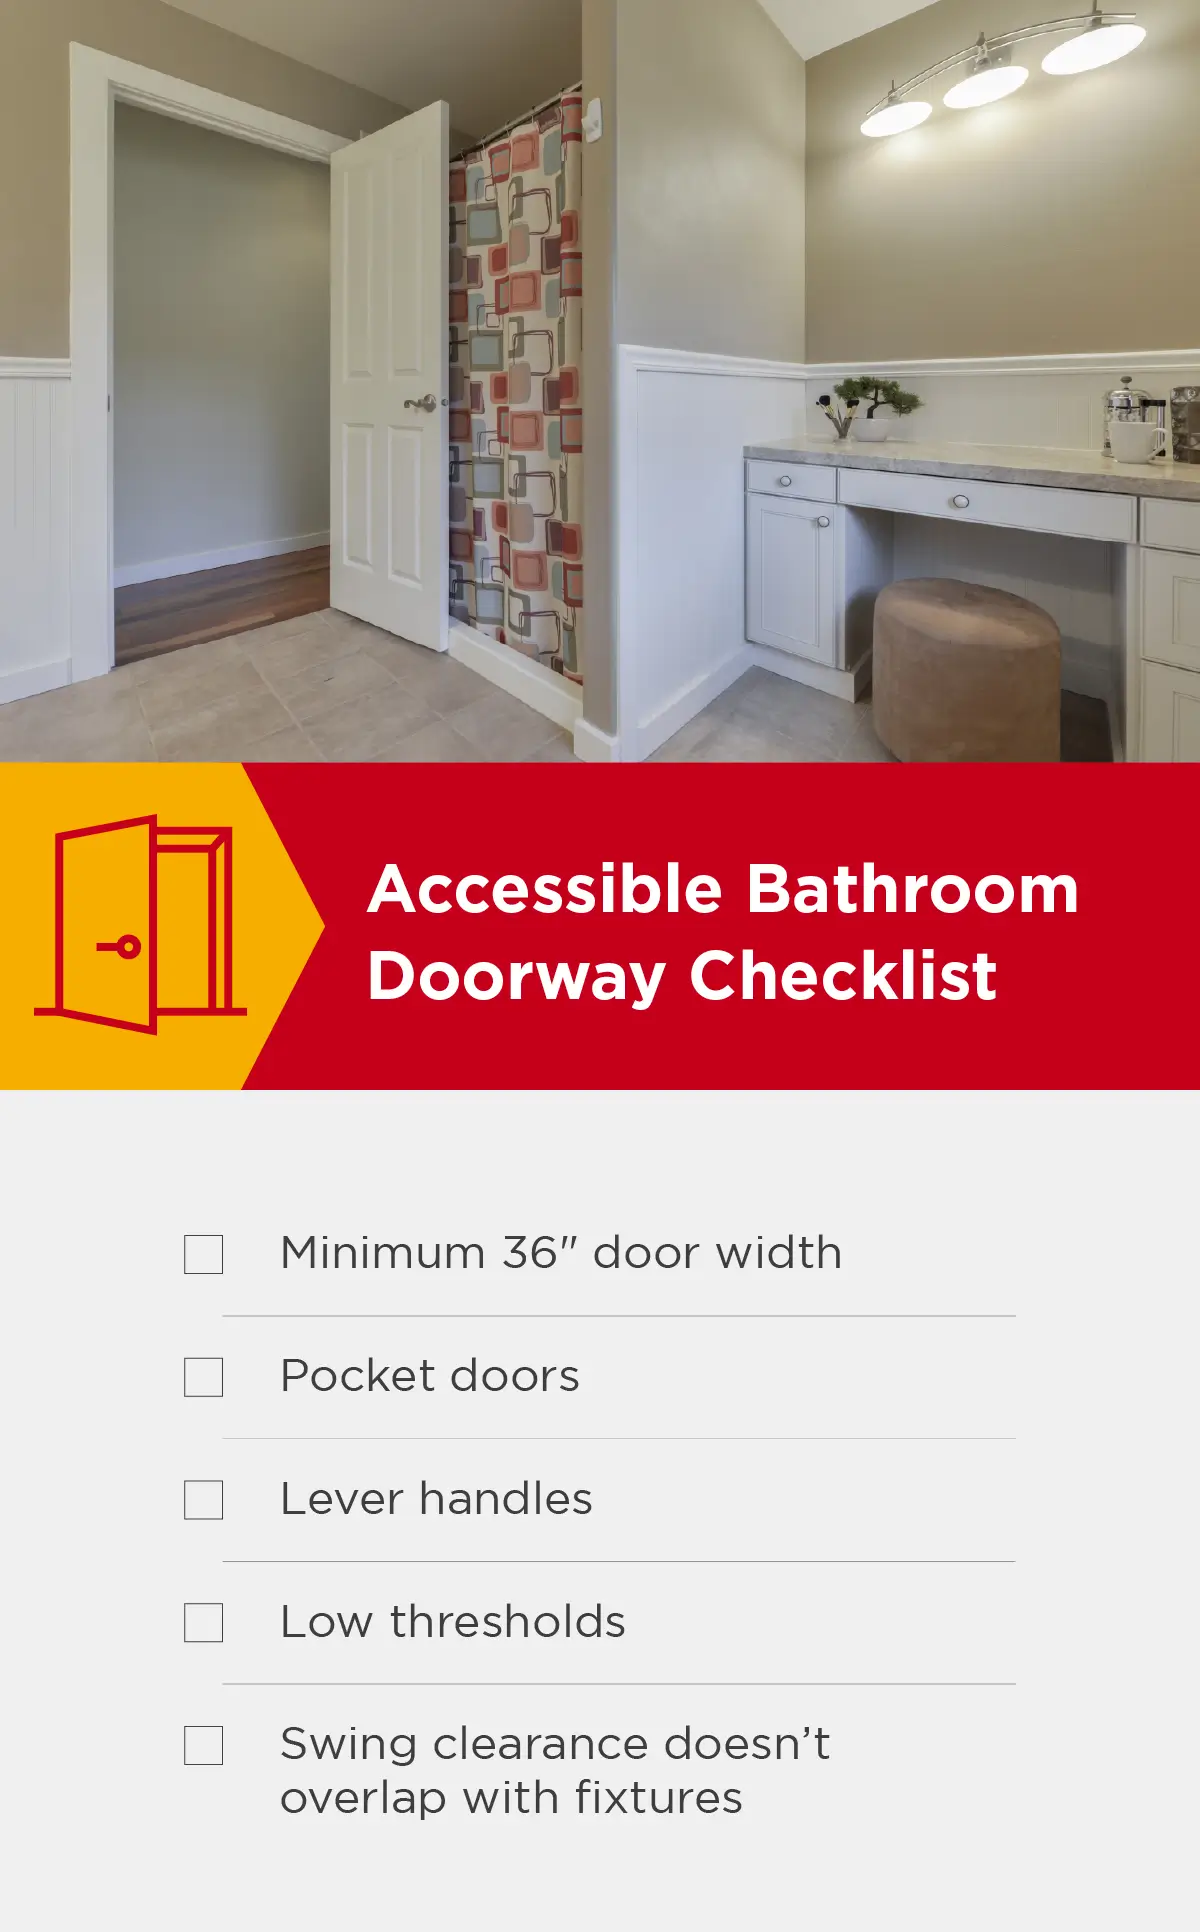 Accessible bathroom doorway checklist